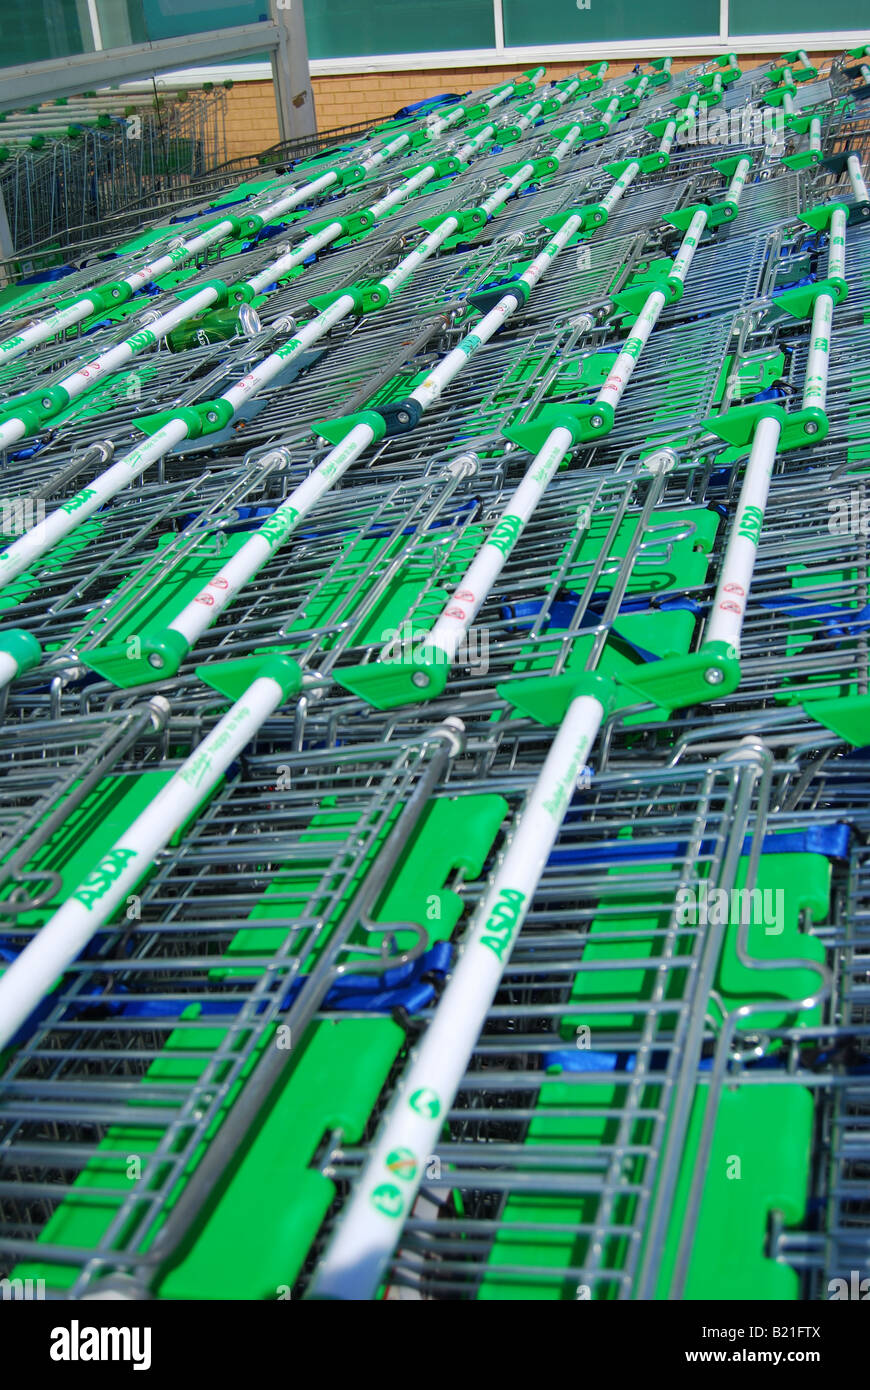 Carrelli della spesa, Asda 24 ora supermercato, centro città, Hatfield, Hertfordshire, England, Regno Unito Foto Stock